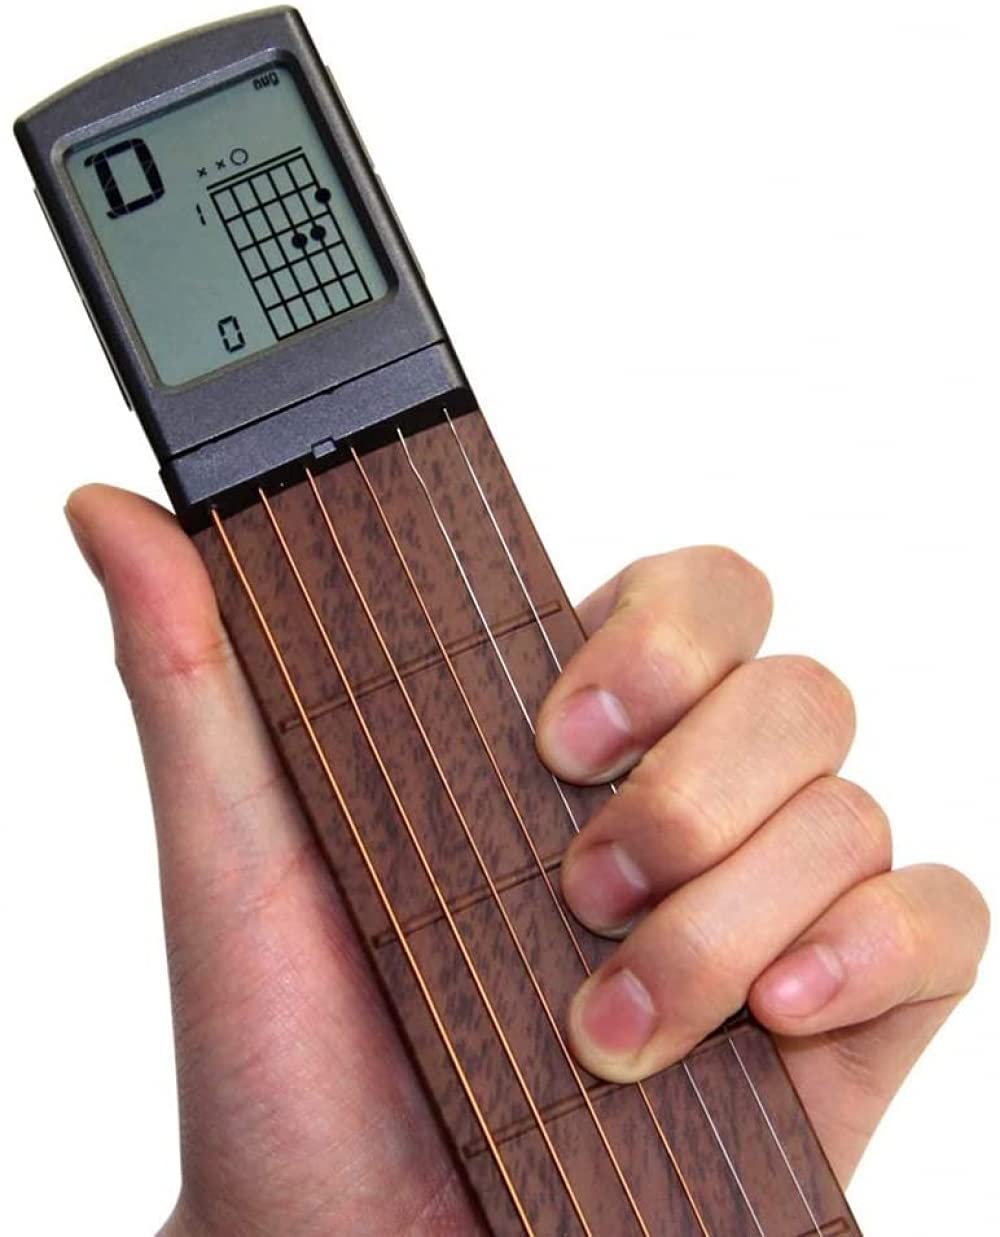 Siqi Tasche Gitarre Akkord Praxis Tool, tragbare Gitarre Hals für Trainer Anfänger W/eine drehbare Akkorde Chart Bildschirm (Batterie enthalten)